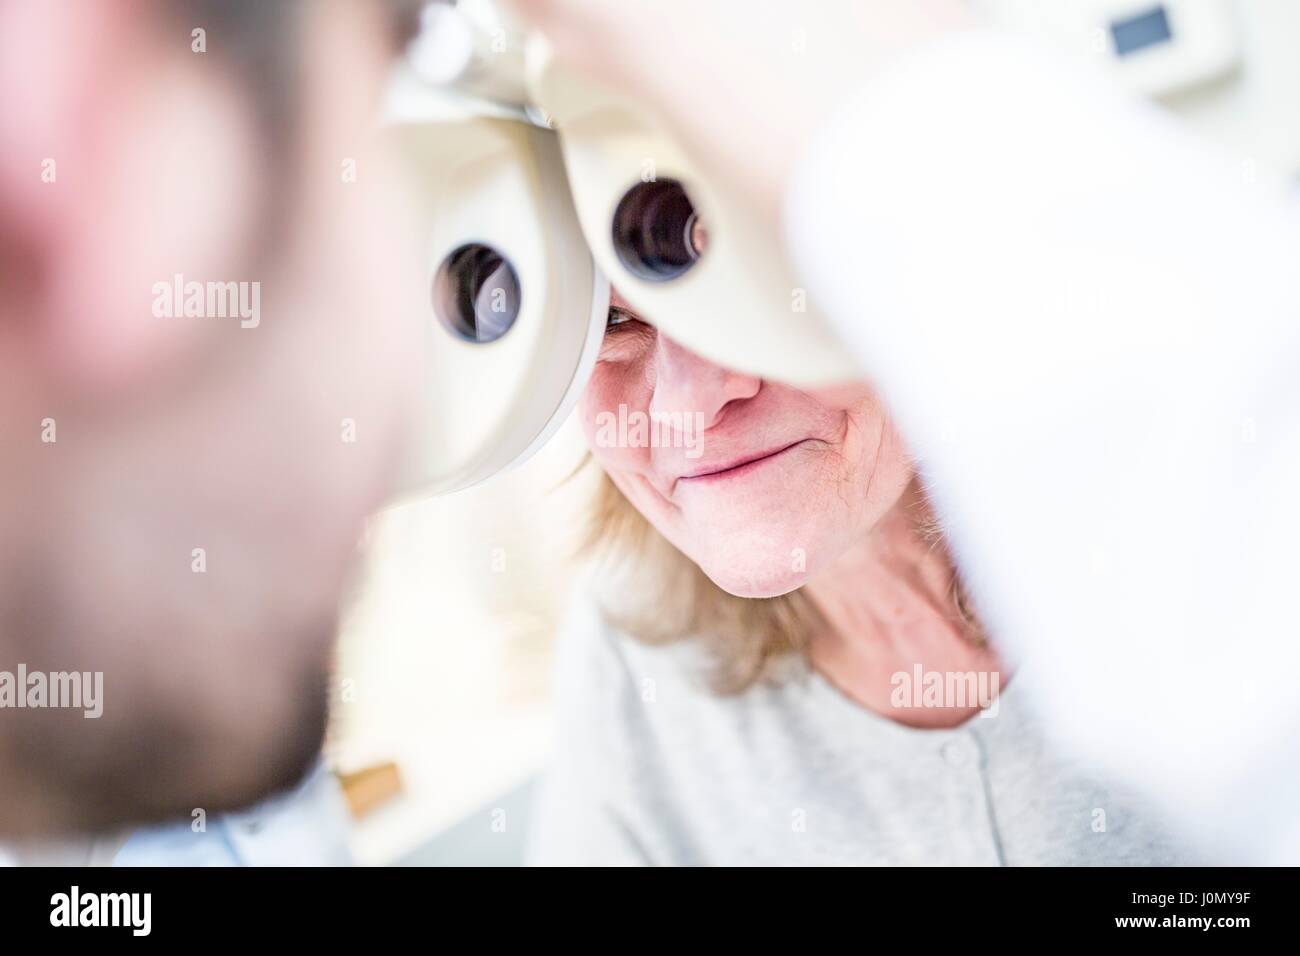 Optometrista realizar examen ocular de la mujer de más edad con phoropter optometrista en la tienda. Foto de stock